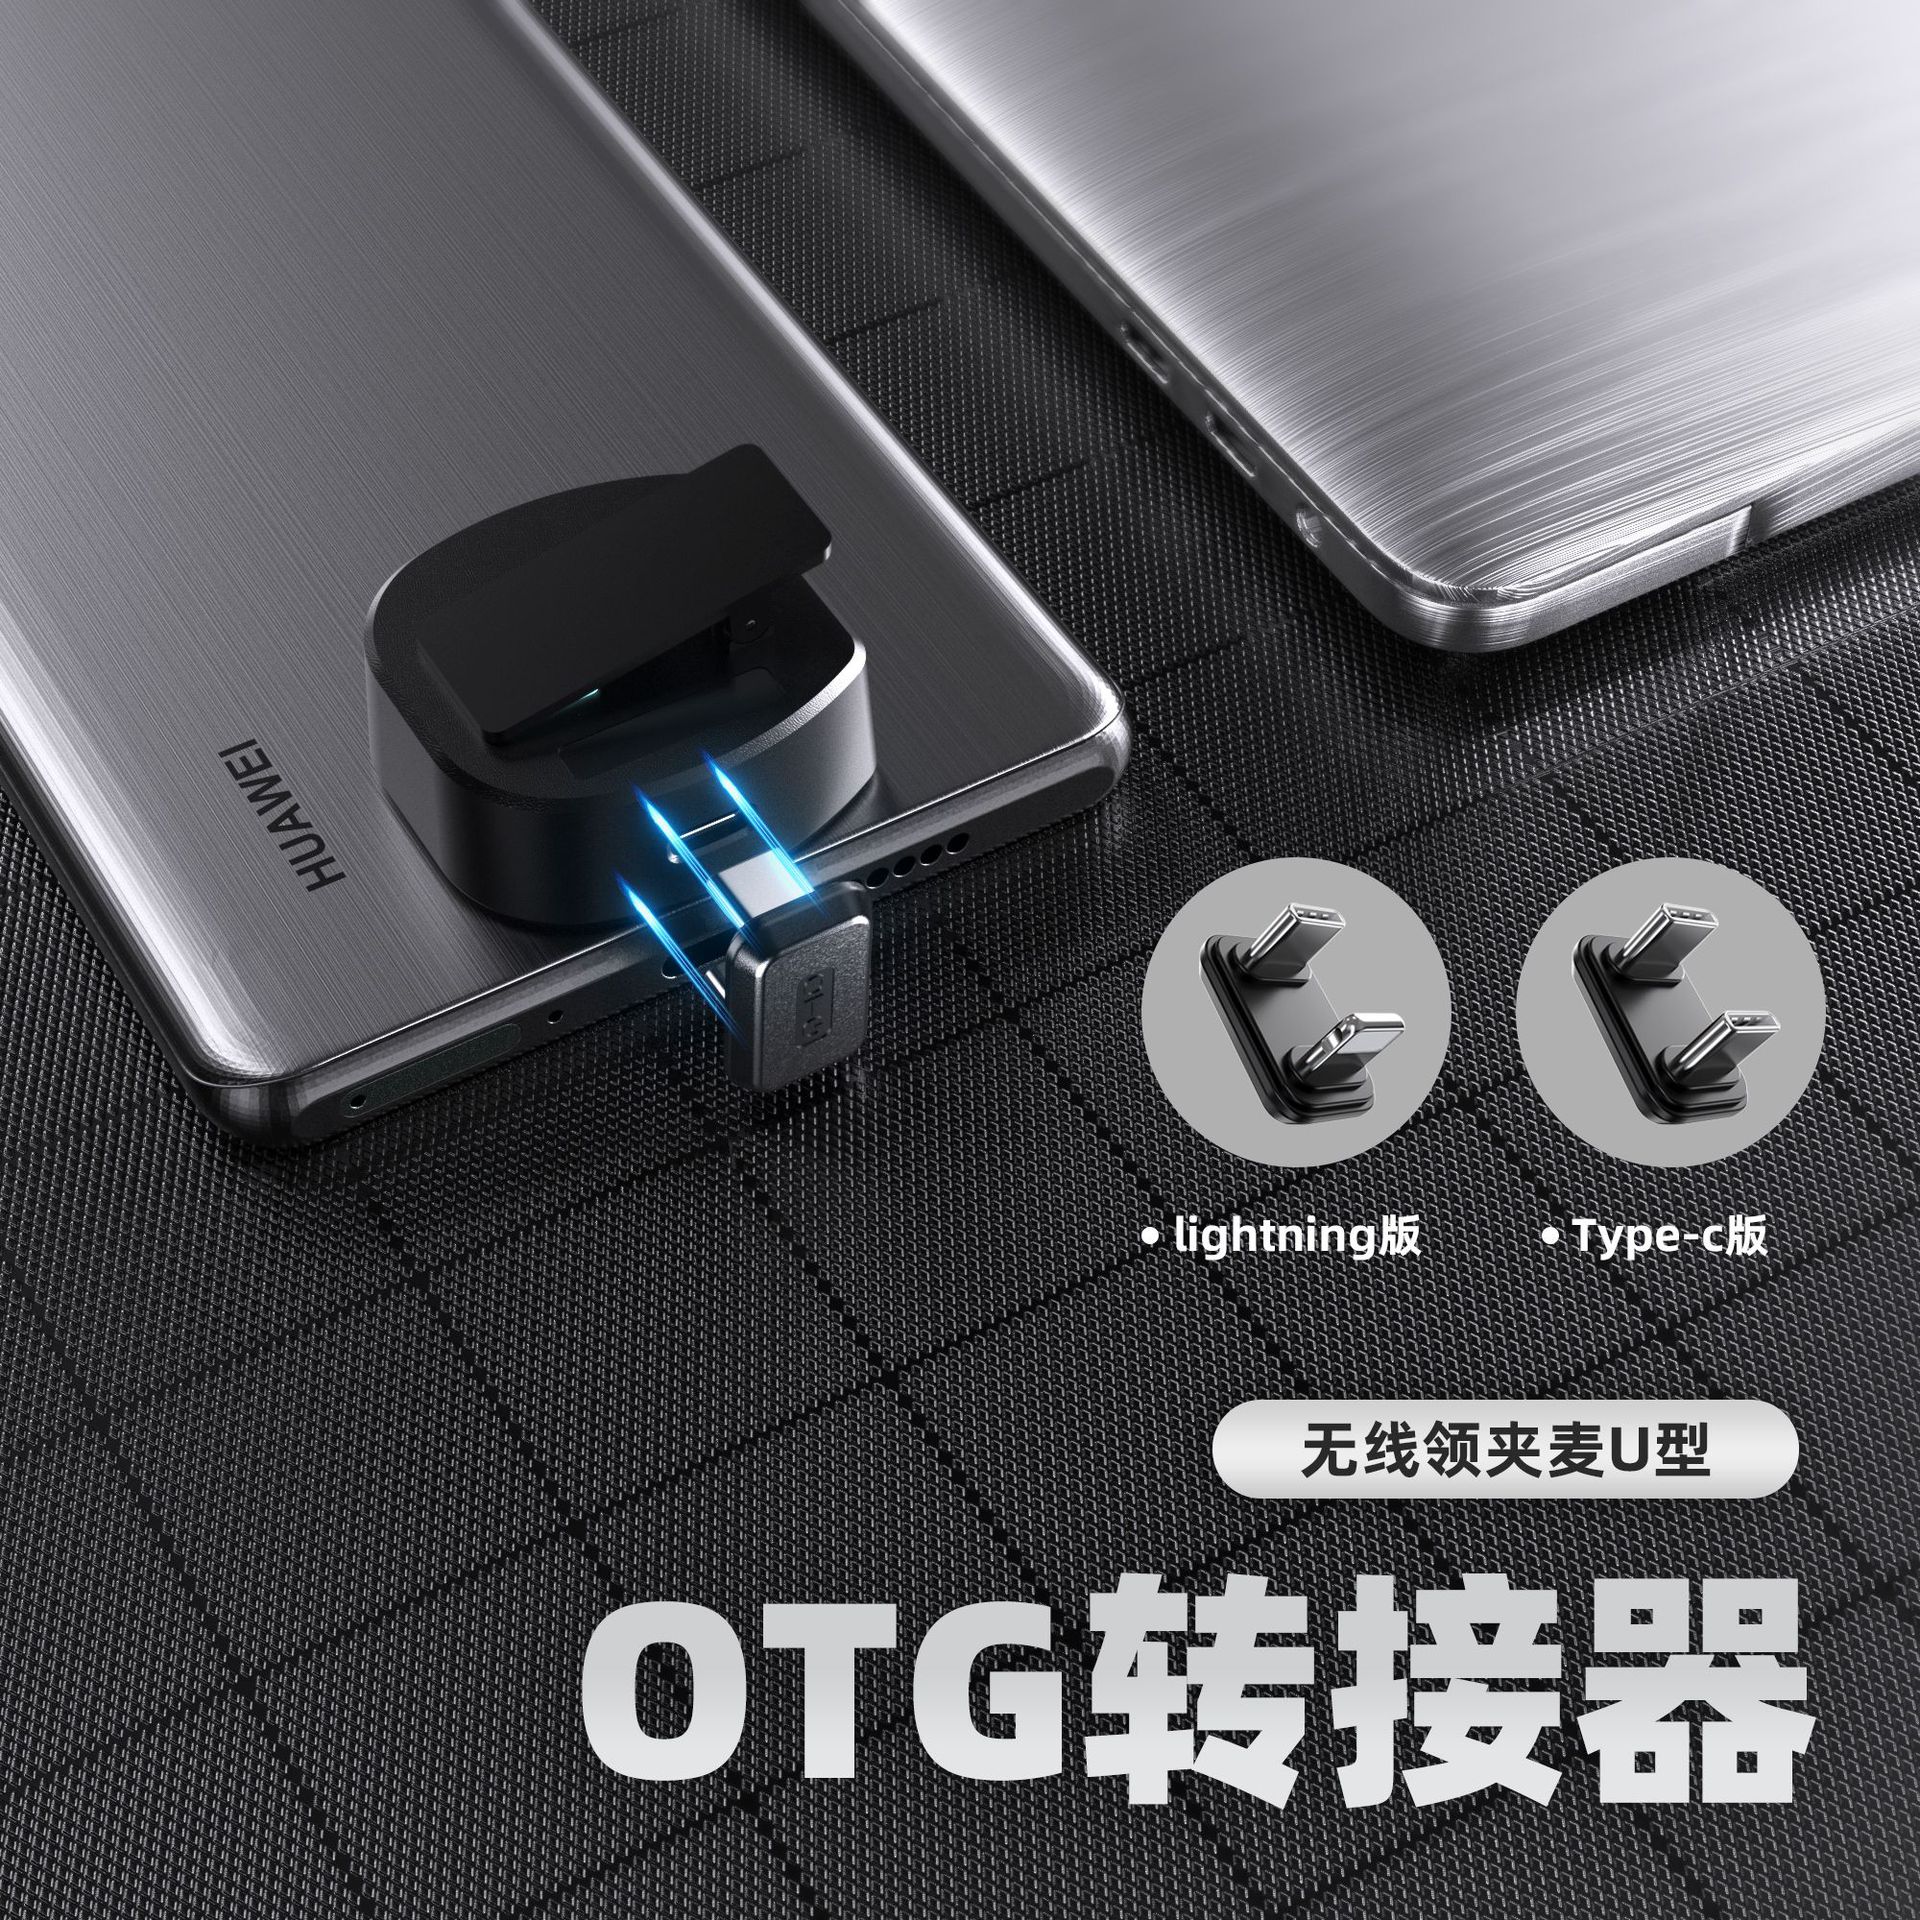 U型OTG多功能转接器 适用手机接领夹麦边播充电苹果安卓otg转接头